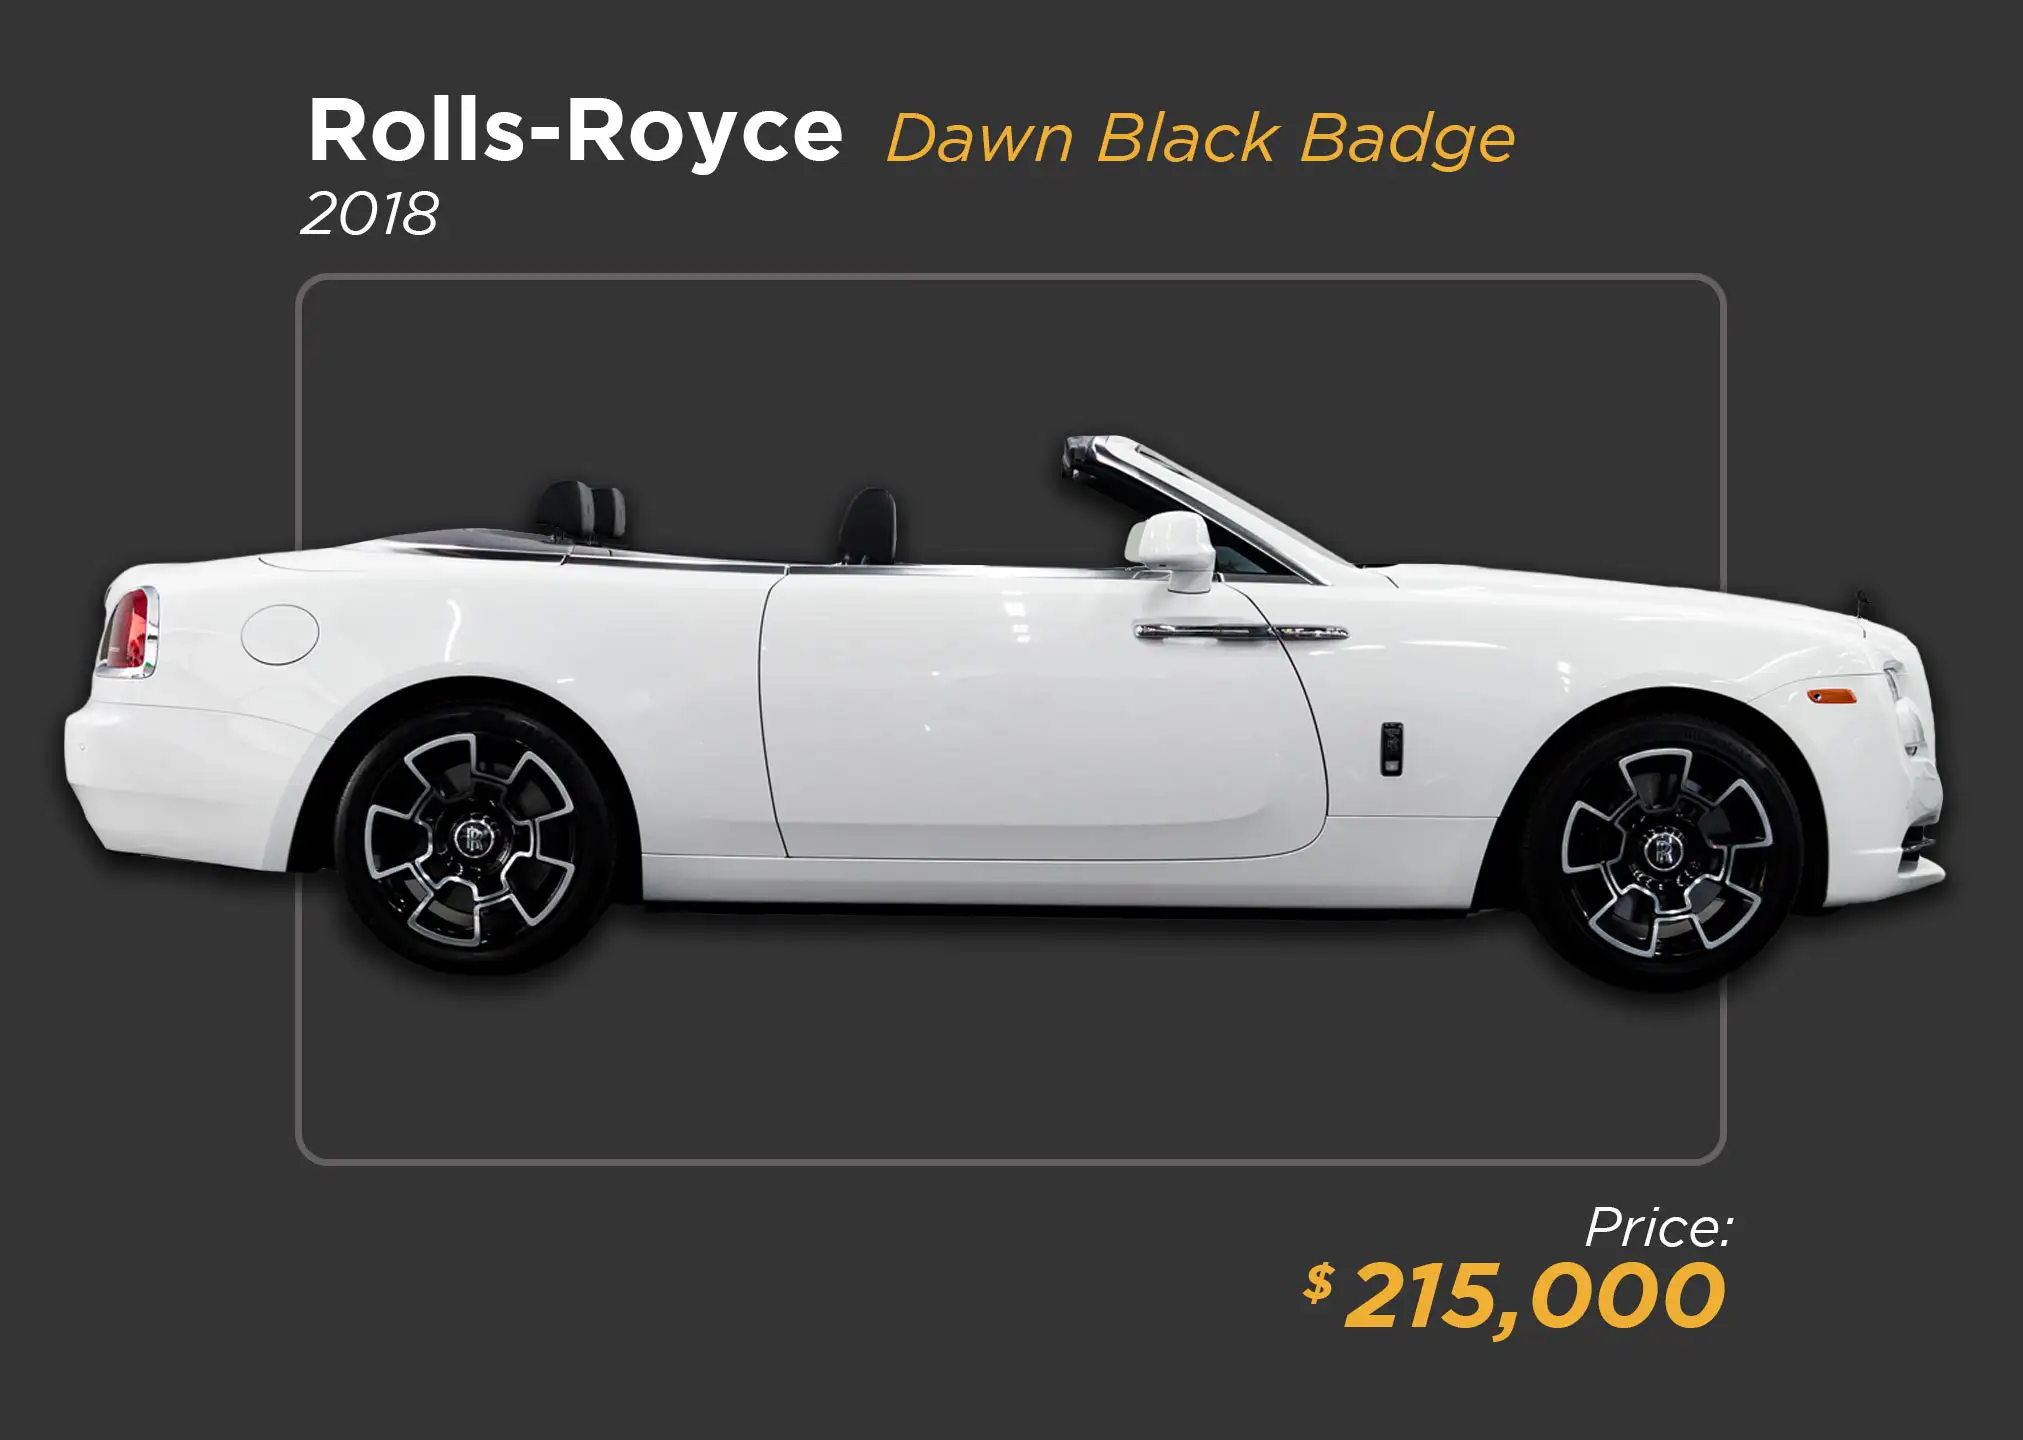 2018 white Rolls Royce Dawn for sale - mph club 215k